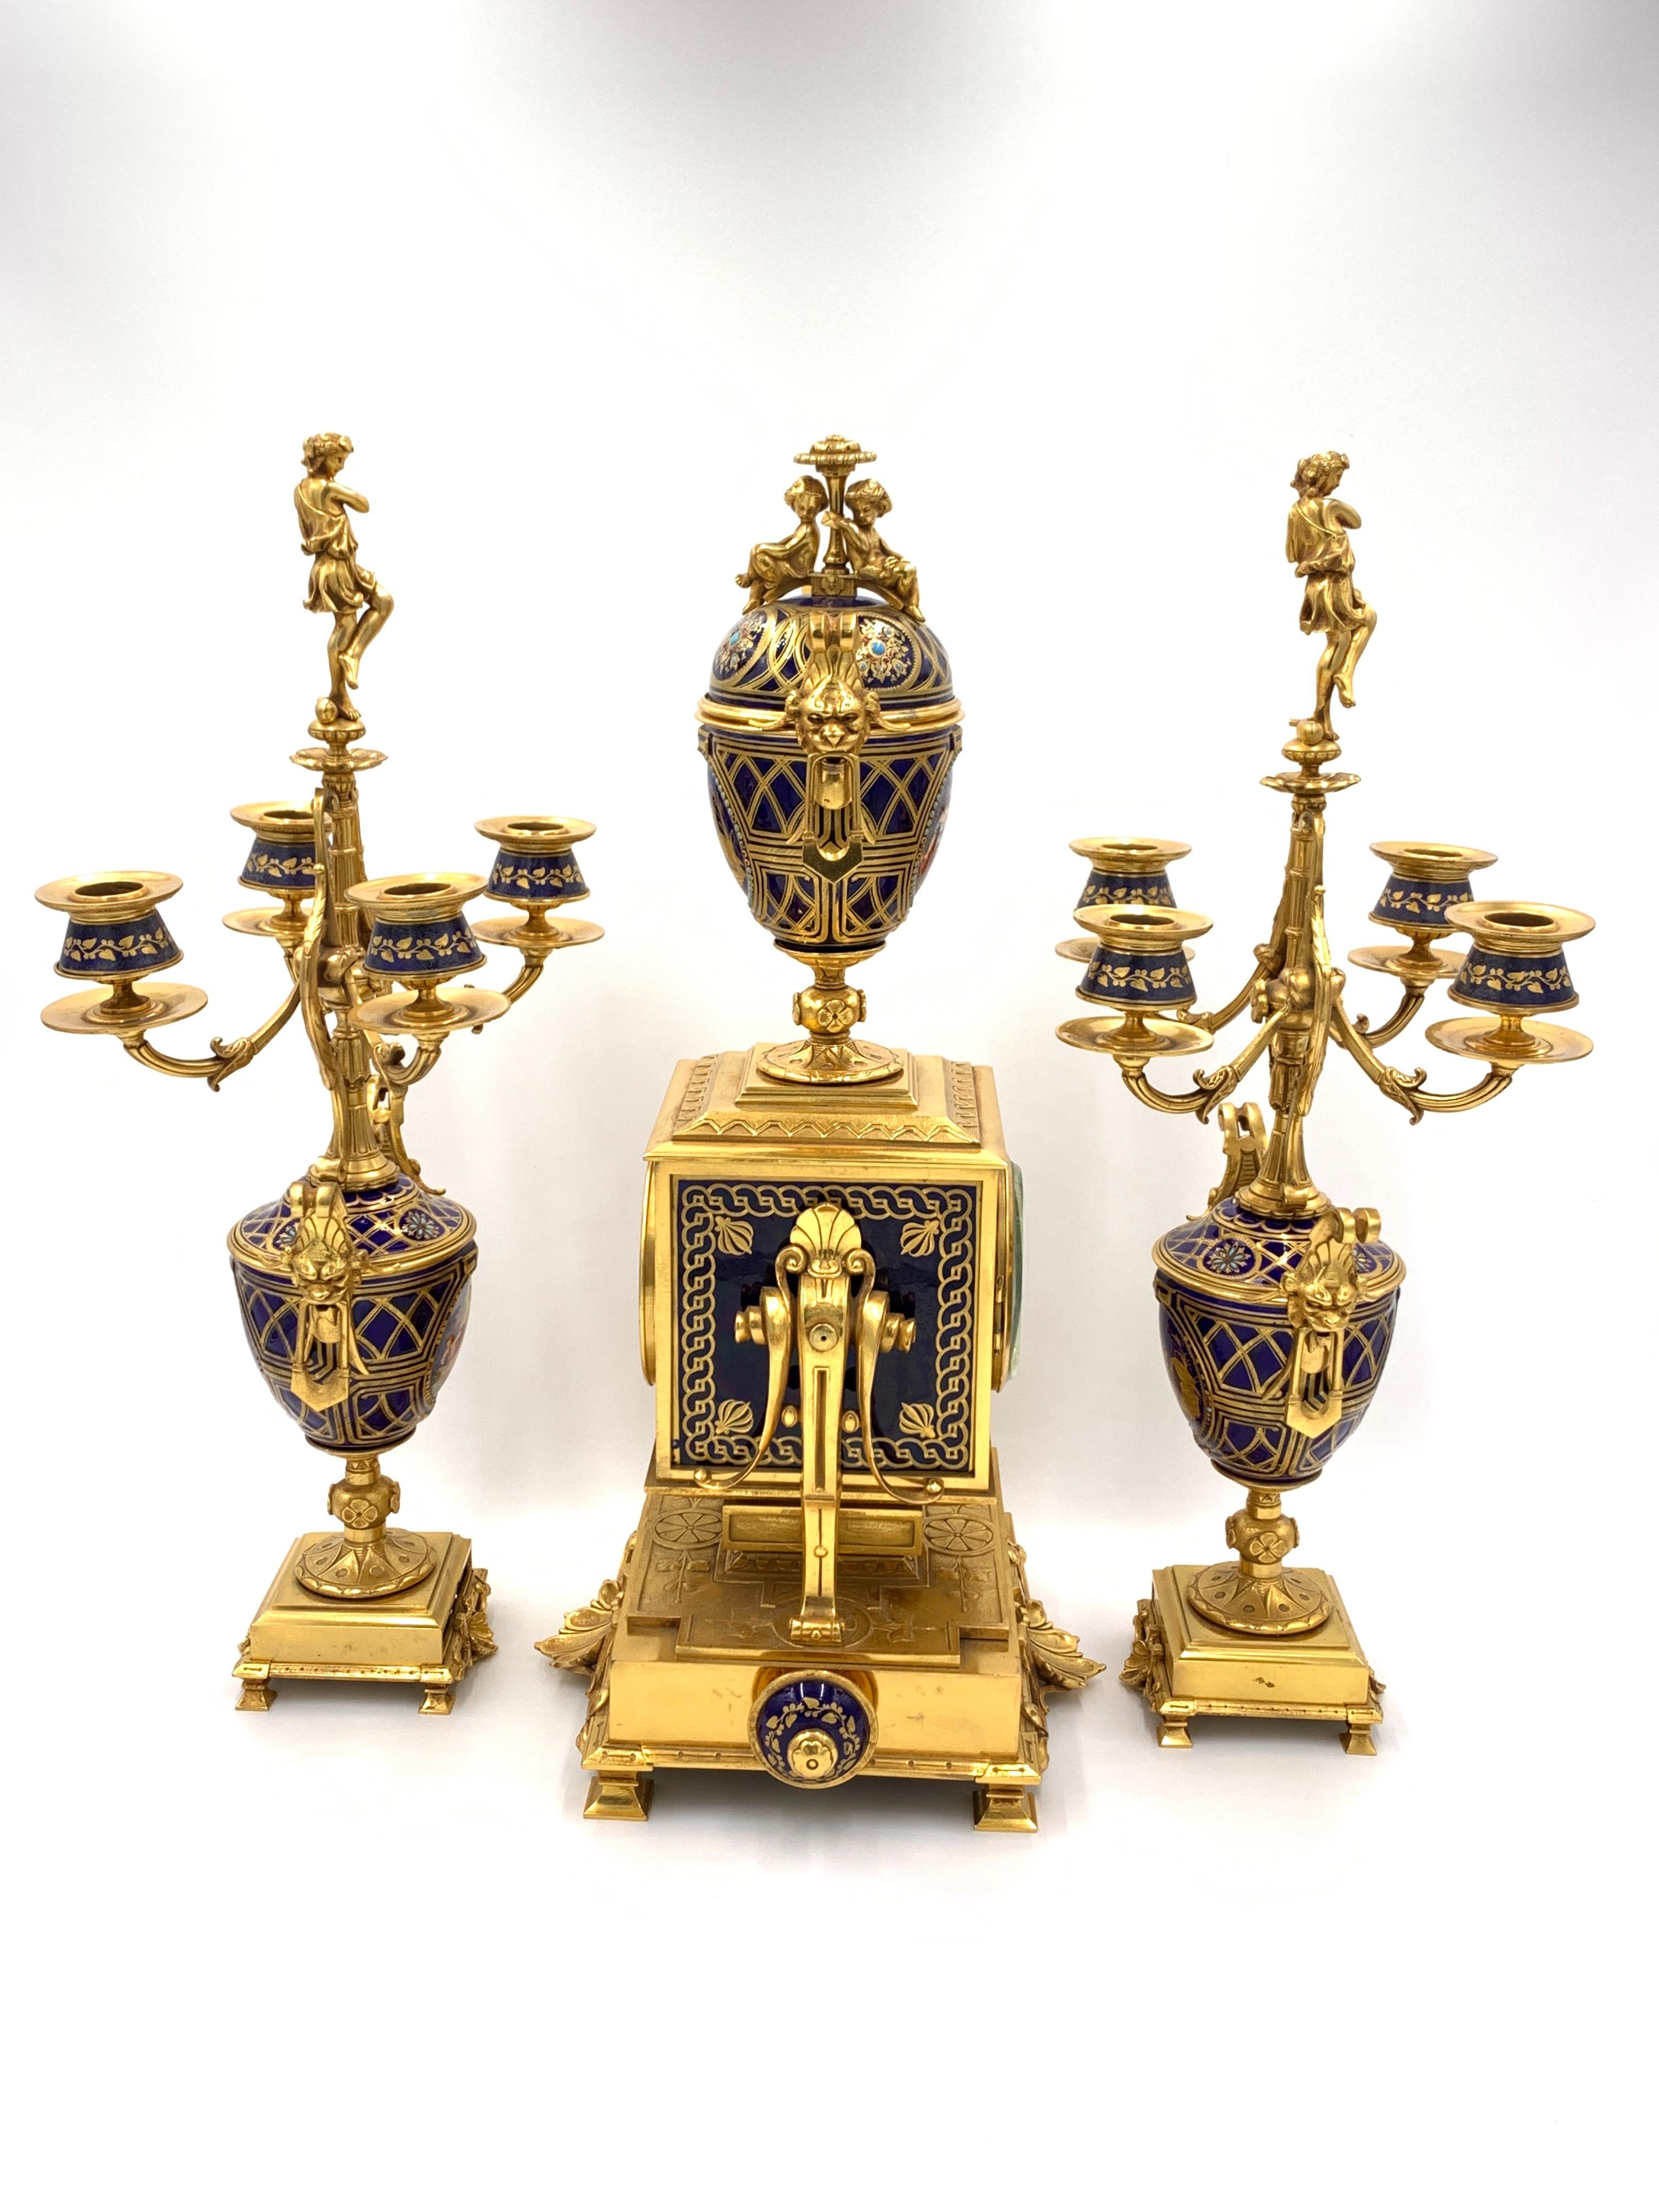 Eine feine Qualität 19. Jahrhundert Französisch Sevres Porzellan-Stil und vergoldet Ormolu Uhr Garnitur, beeindruckendes Paar von vier Zweig Kandelaber. 

Maße: Uhr, H: 53cm, T: 24cm, B: 27cm
Kandelaber, H: 50,5cm, T: 16, B: 20cm.